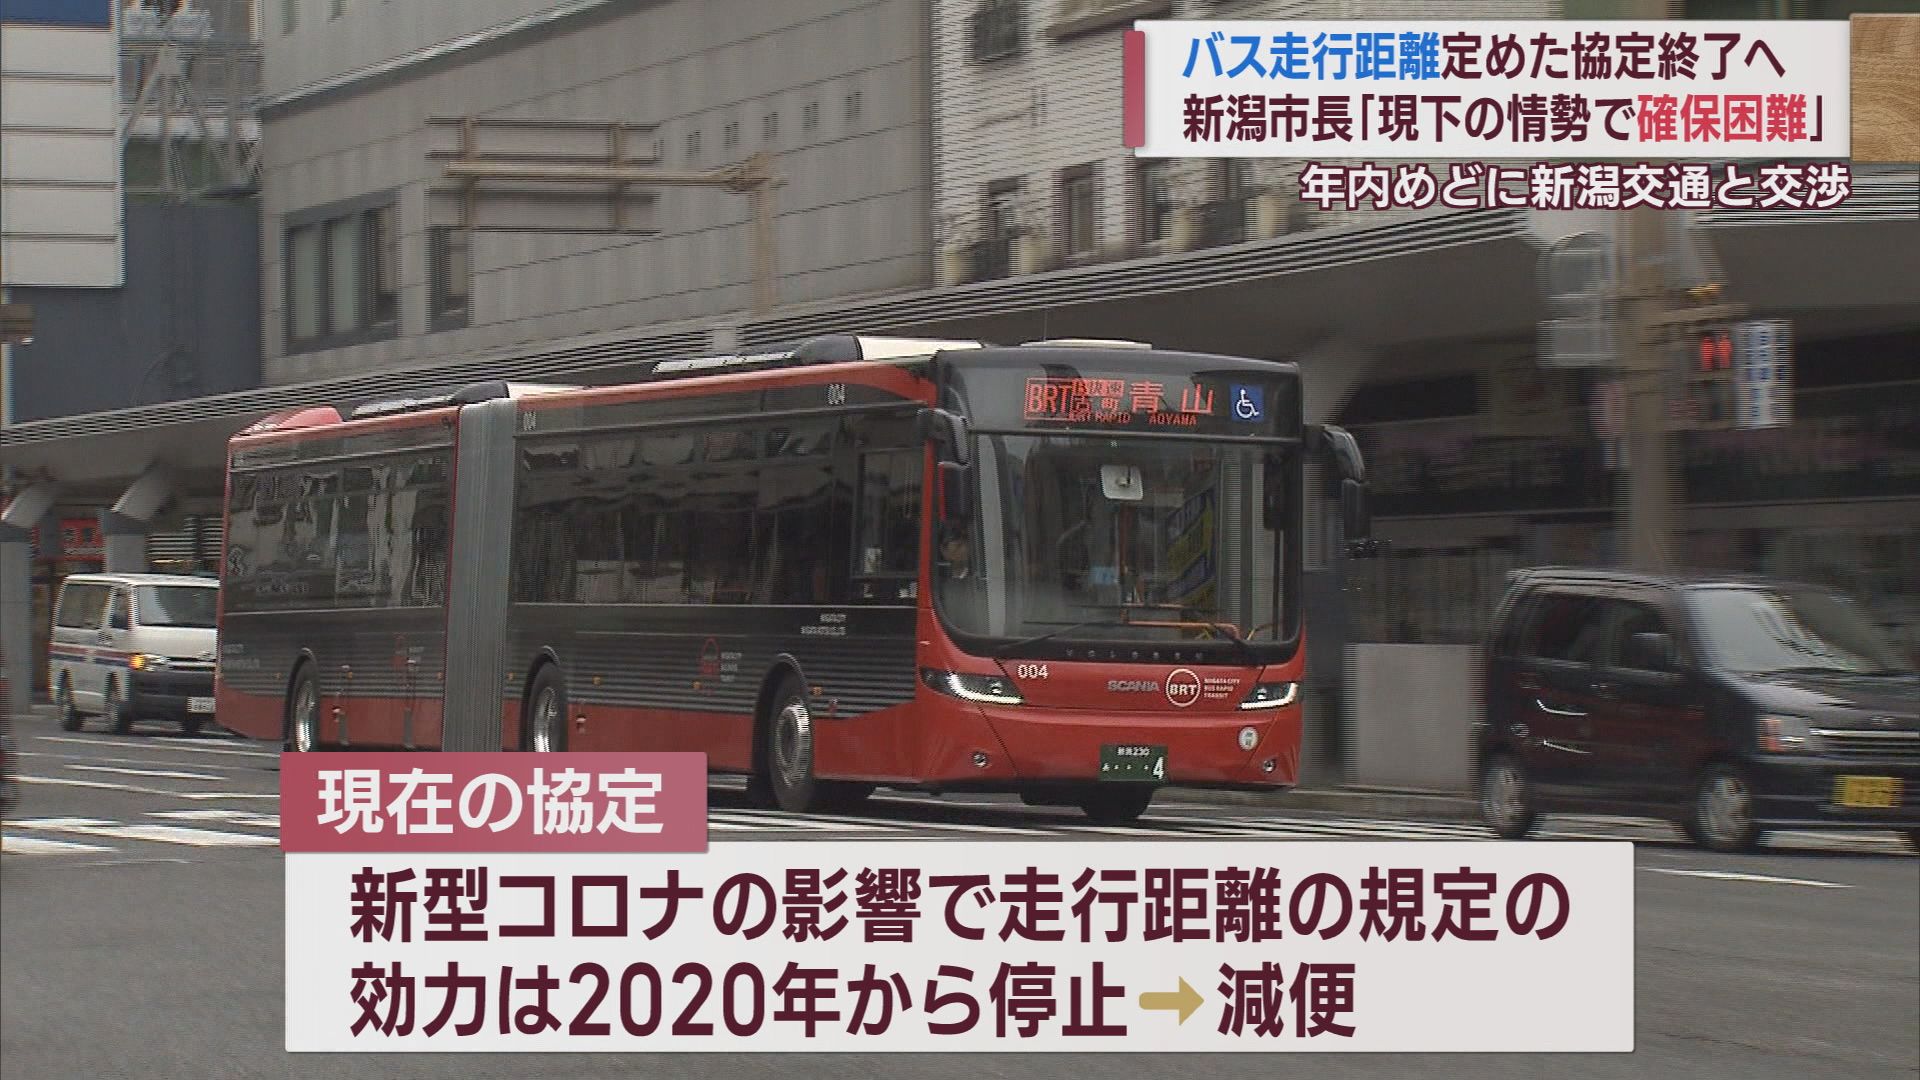 バス路線「年間走行距離」の規定は 新潟交通と新潟市が新協定へ【新潟】